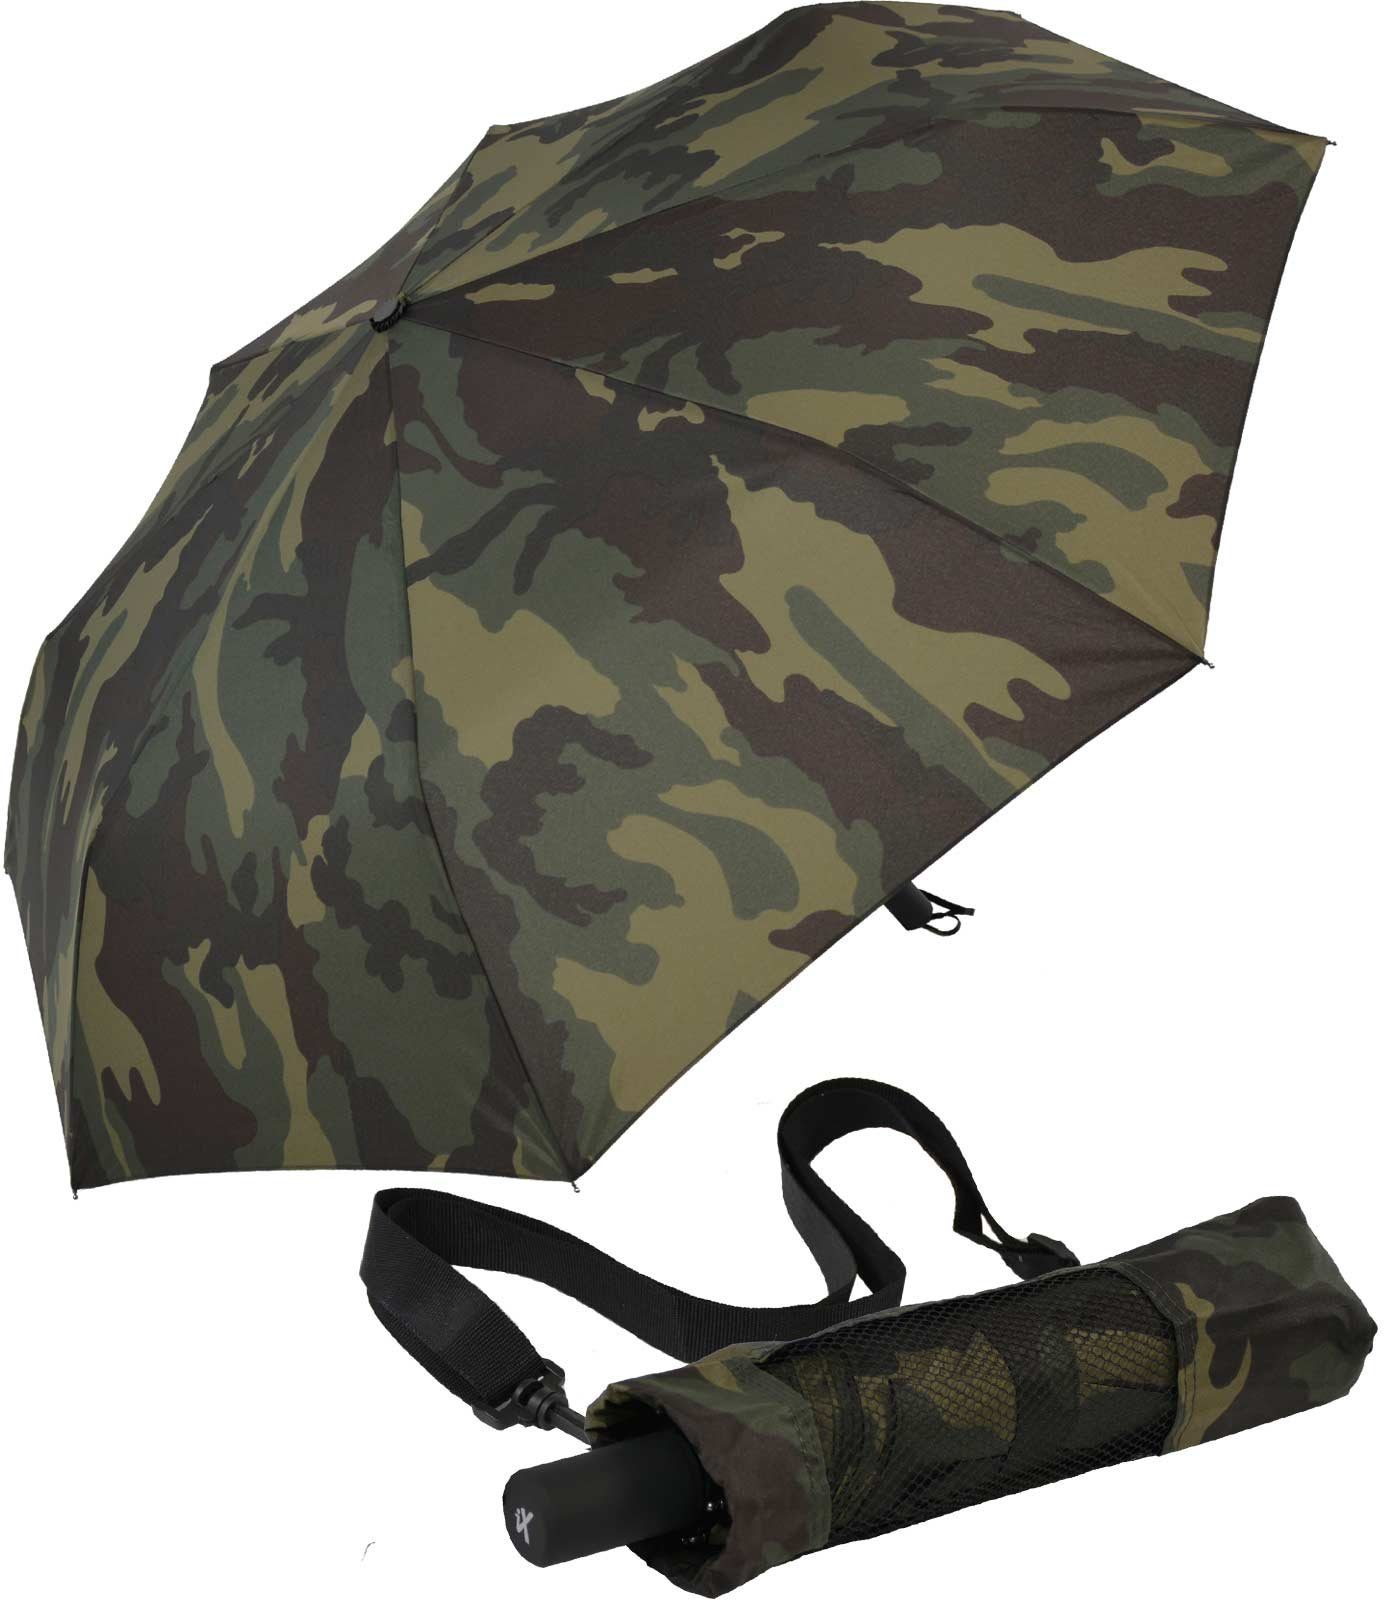 iX-brella Stockregenschirm XXL Trekking-Schirm mit farblich passender Umhängetasche - Camouflage, sehr-groß olive